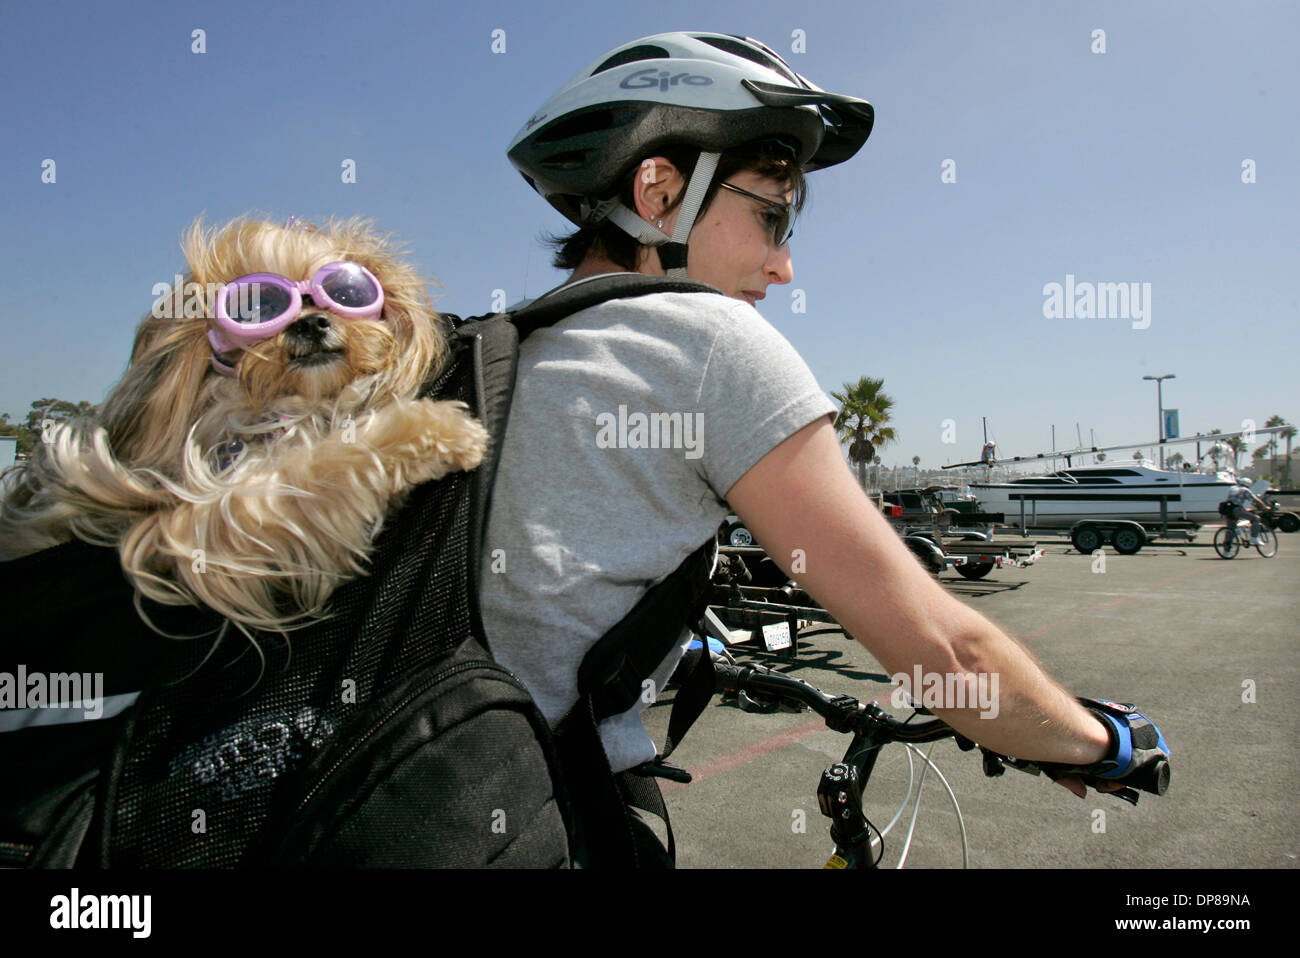 (Pubblicato il 9/22/2006, NC-1, NI-1) 20 settembre 2006, Oceanside, California_Oceanside resident ANN WATTS ha il suo piccolo cane di nome Shanti, che indossa gli occhiali da sole, nel suo zaino come lei prende un giro in bicicletta lungo l'acqua alla Oceanside Harbor. Il cane è un Yorki/Shih tzu mix e sembra essere godendosi_foto di Charlie Neuman/San Diego Union-Tribune/Zuma premere. copyright 200 Foto Stock